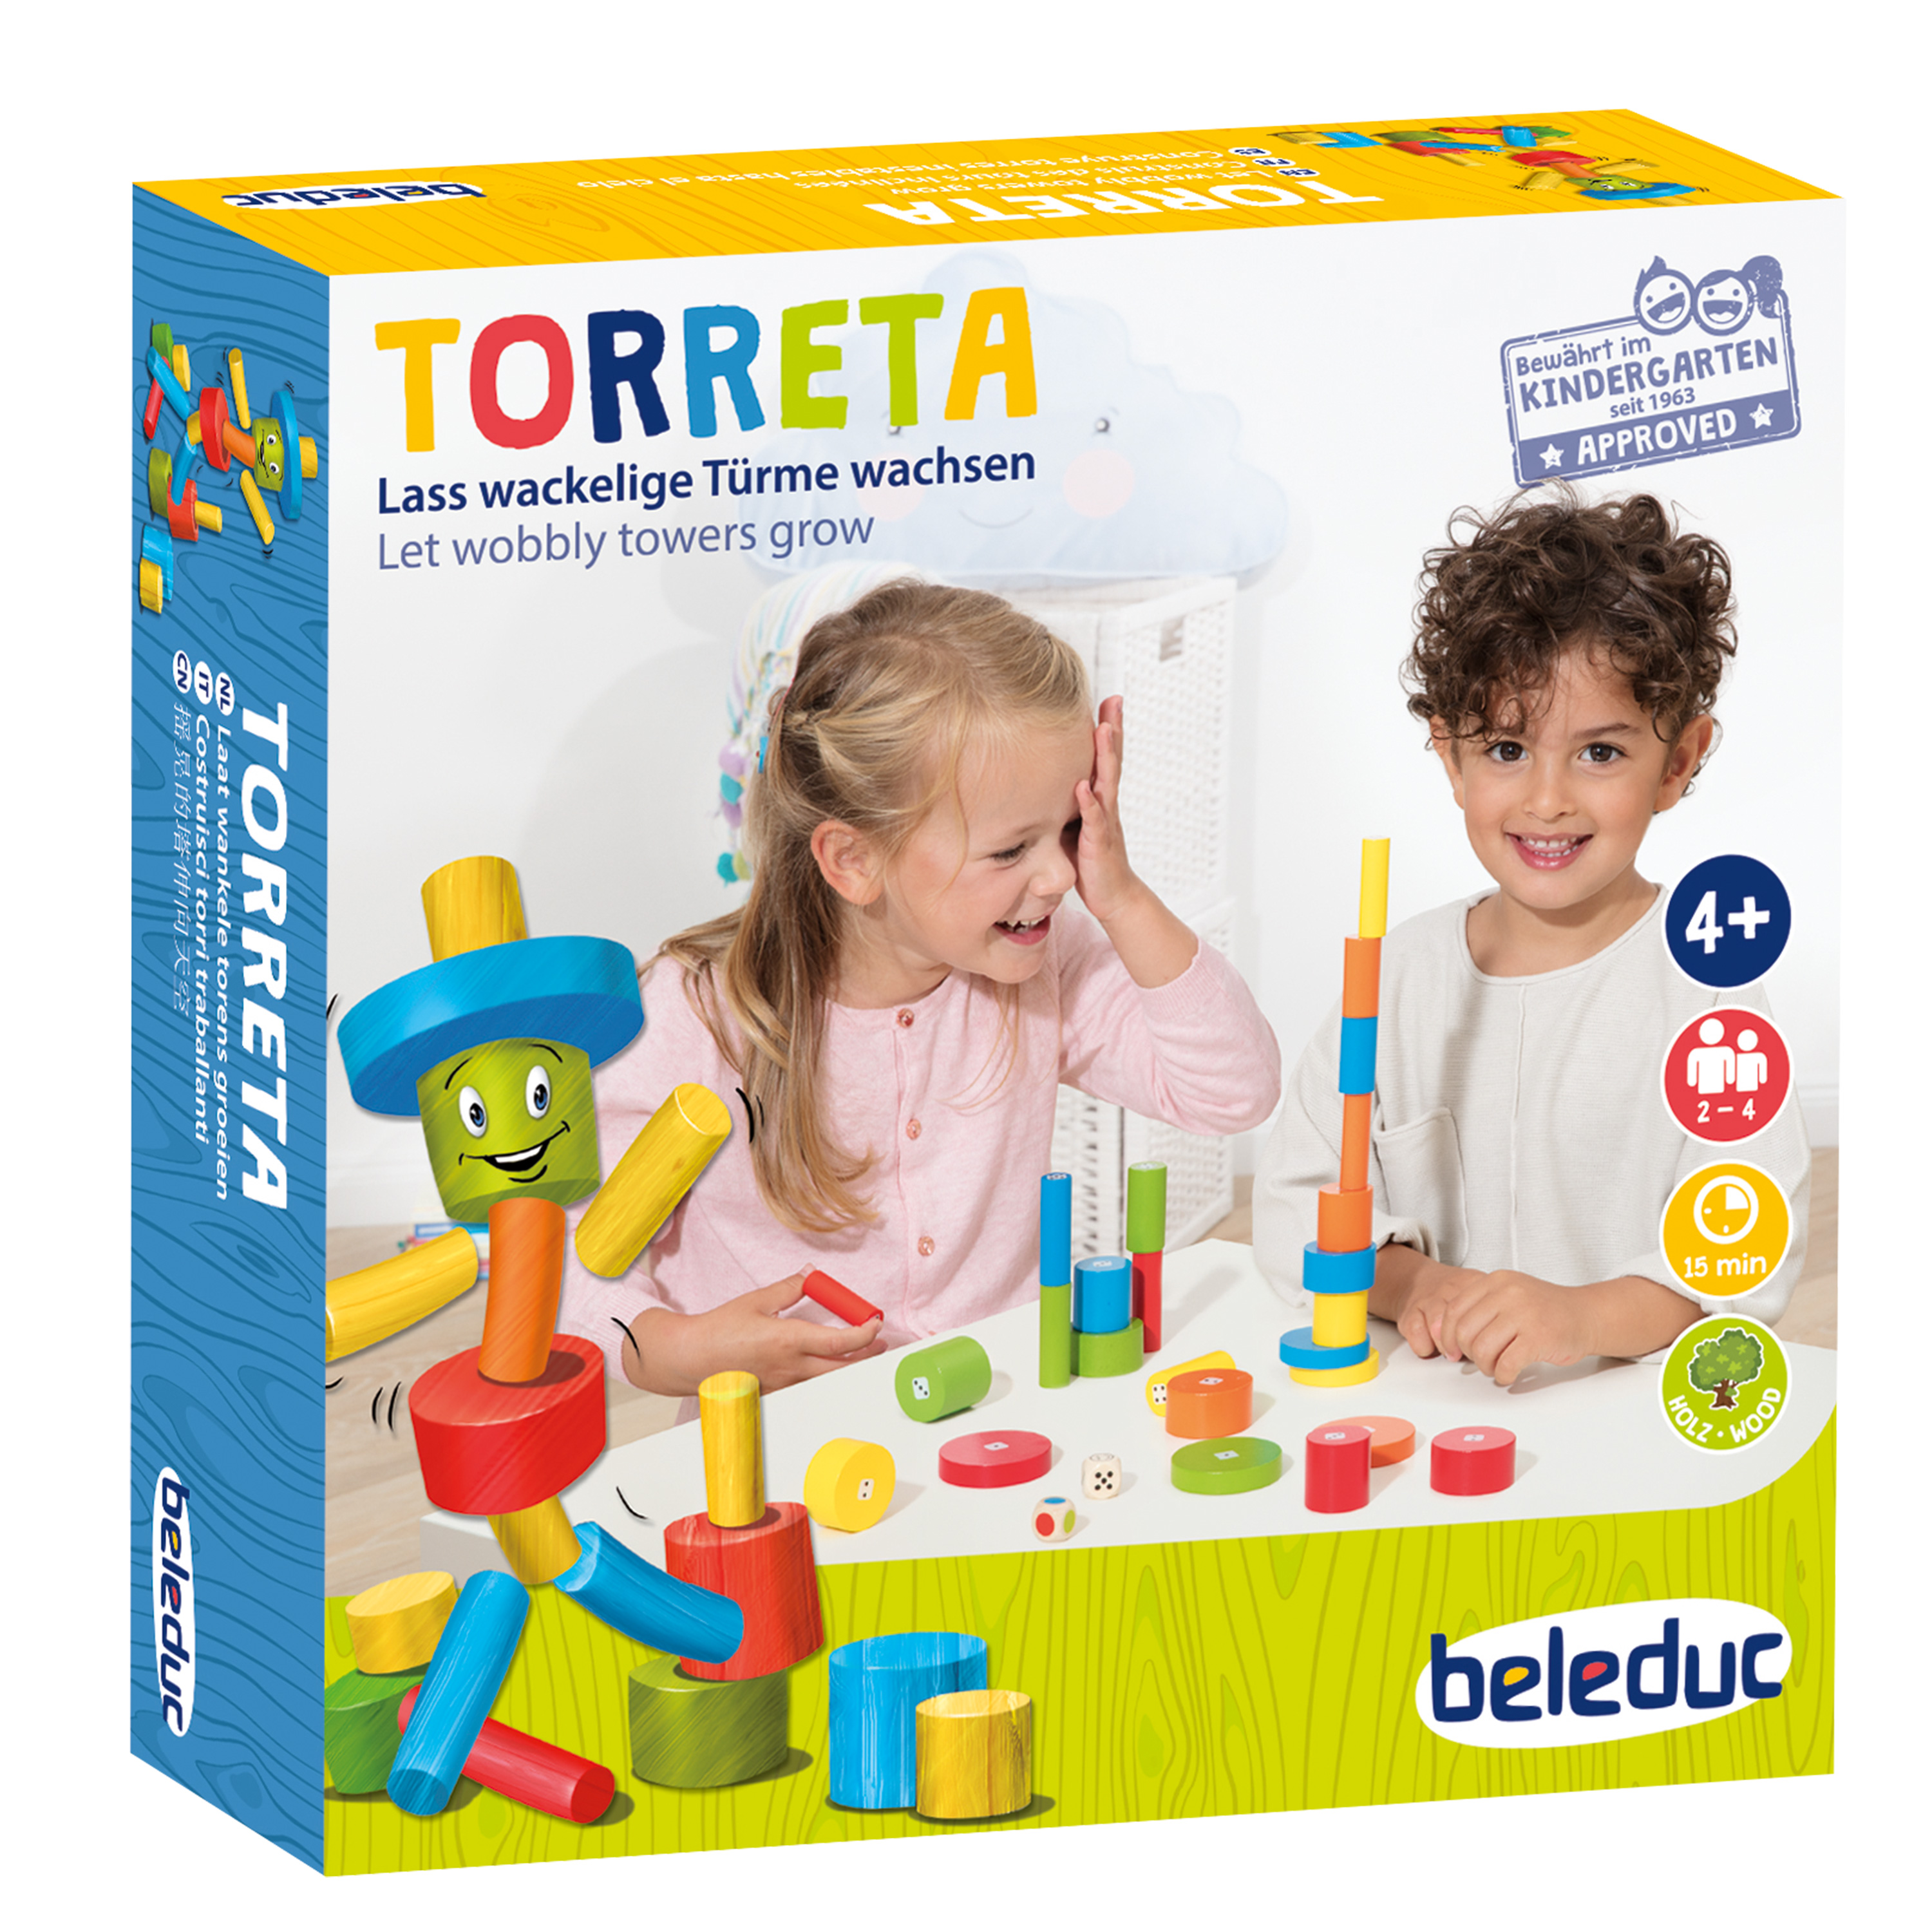 Torreta - das Tischspiel